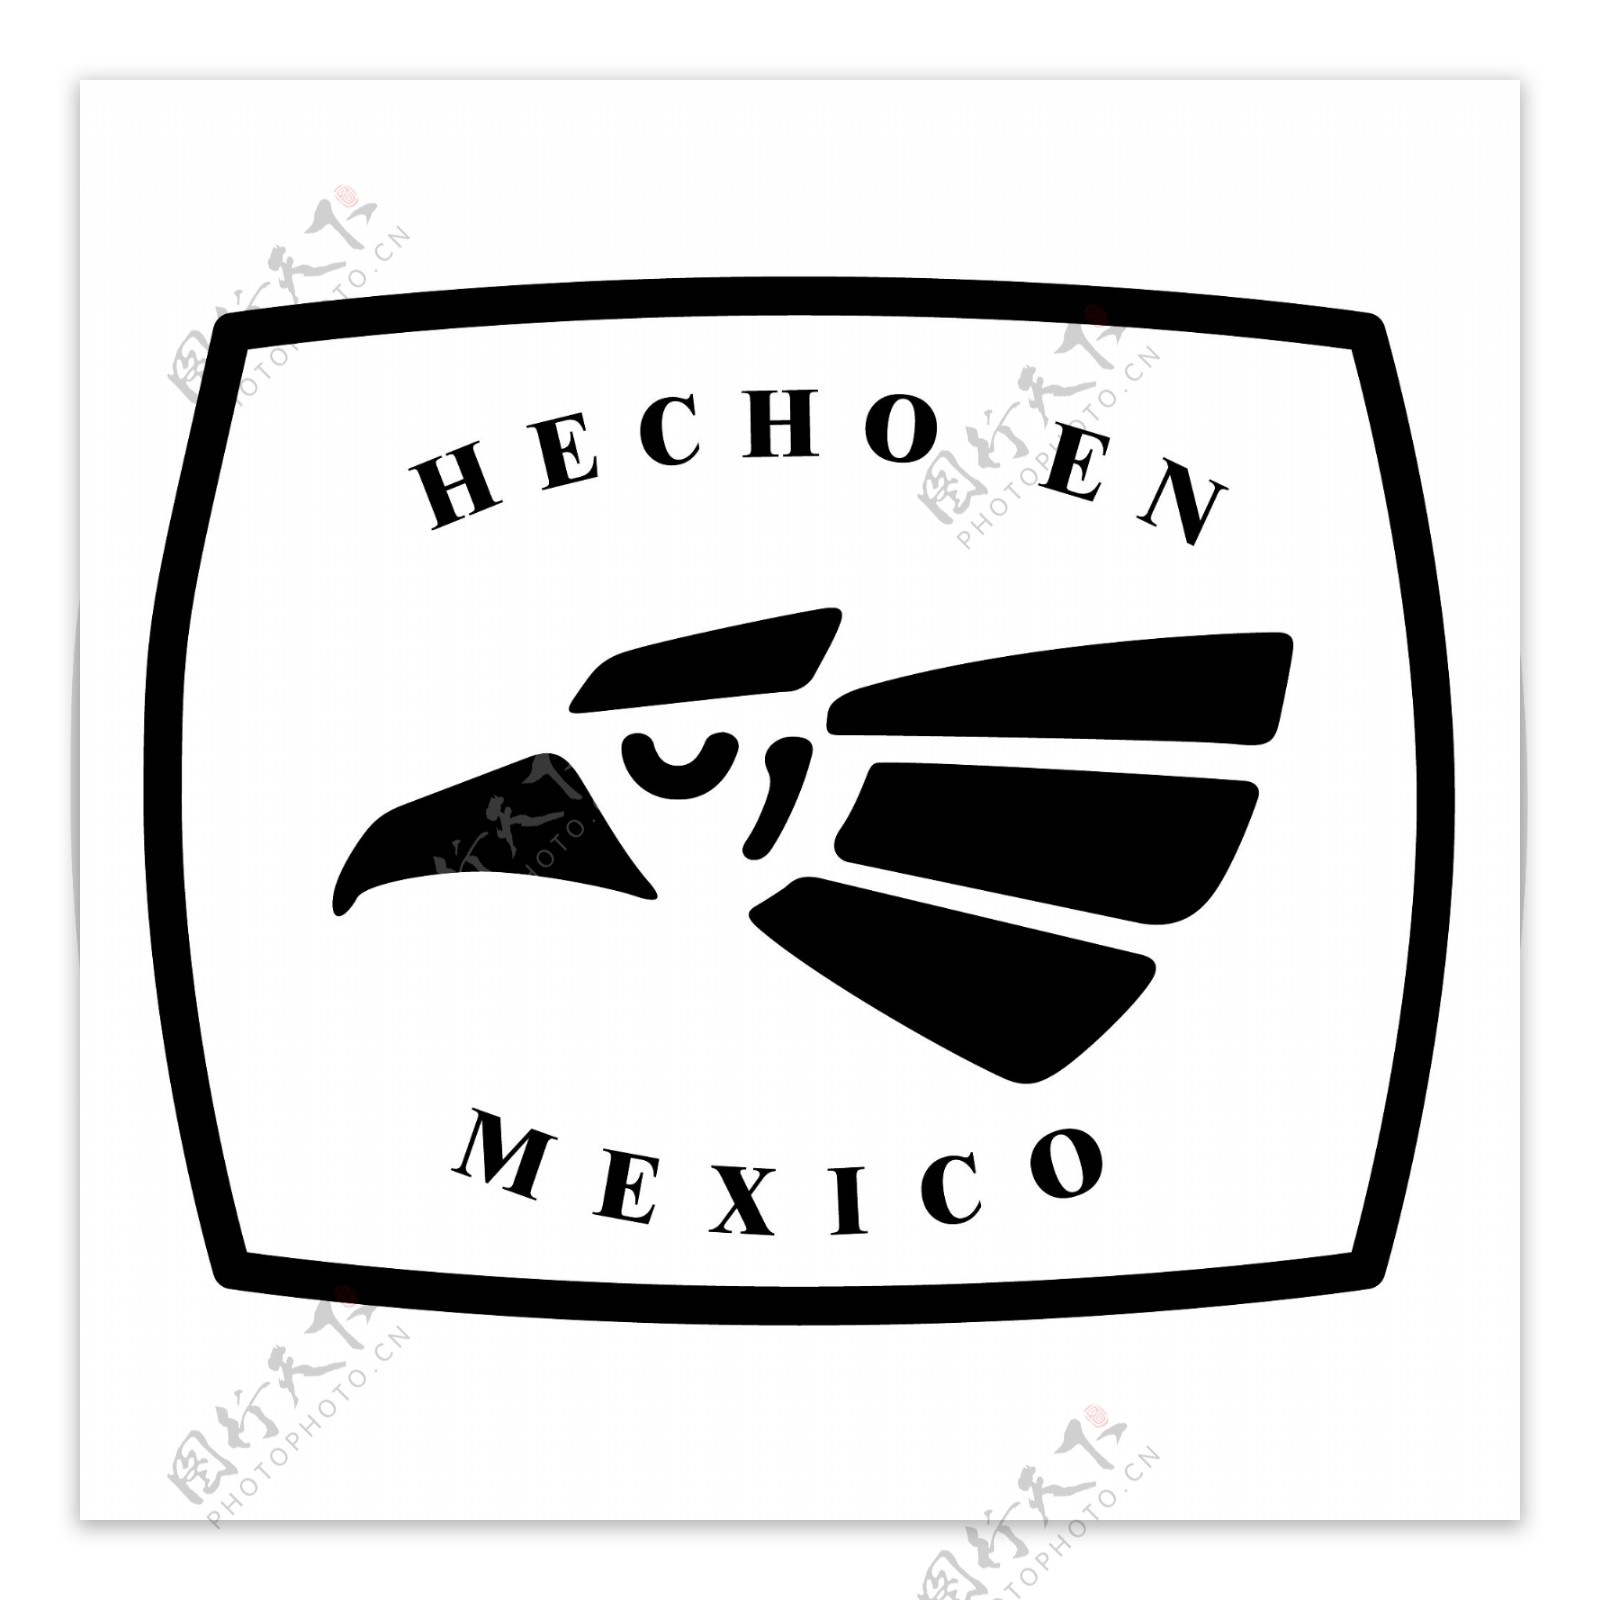 HECHOEN墨西哥